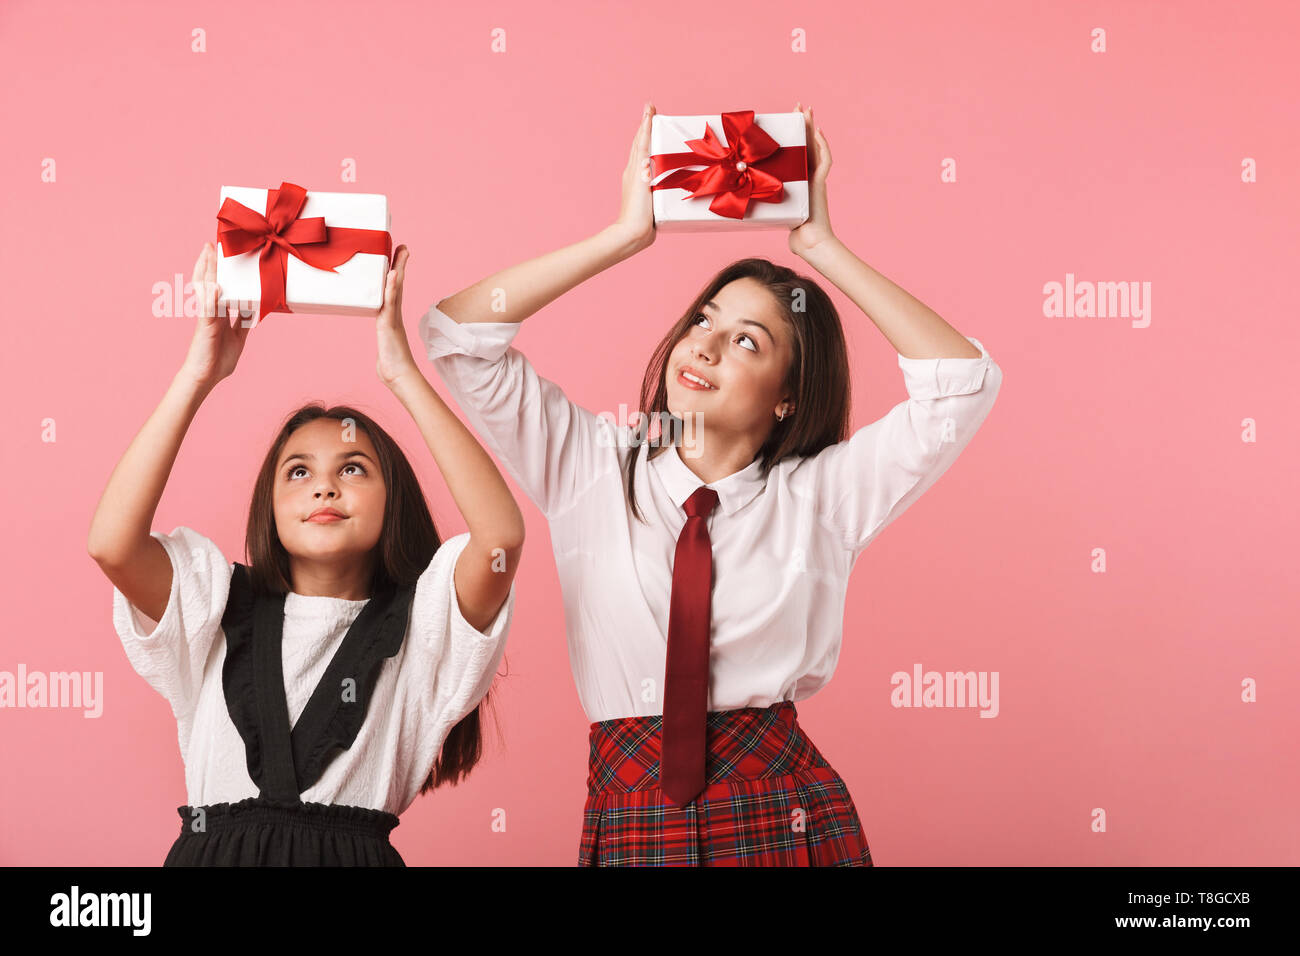 Ritratto di lieta ragazze in uniforme scolastica tenendo presente le caselle mentre in piedi isolato su sfondo rosso Foto Stock